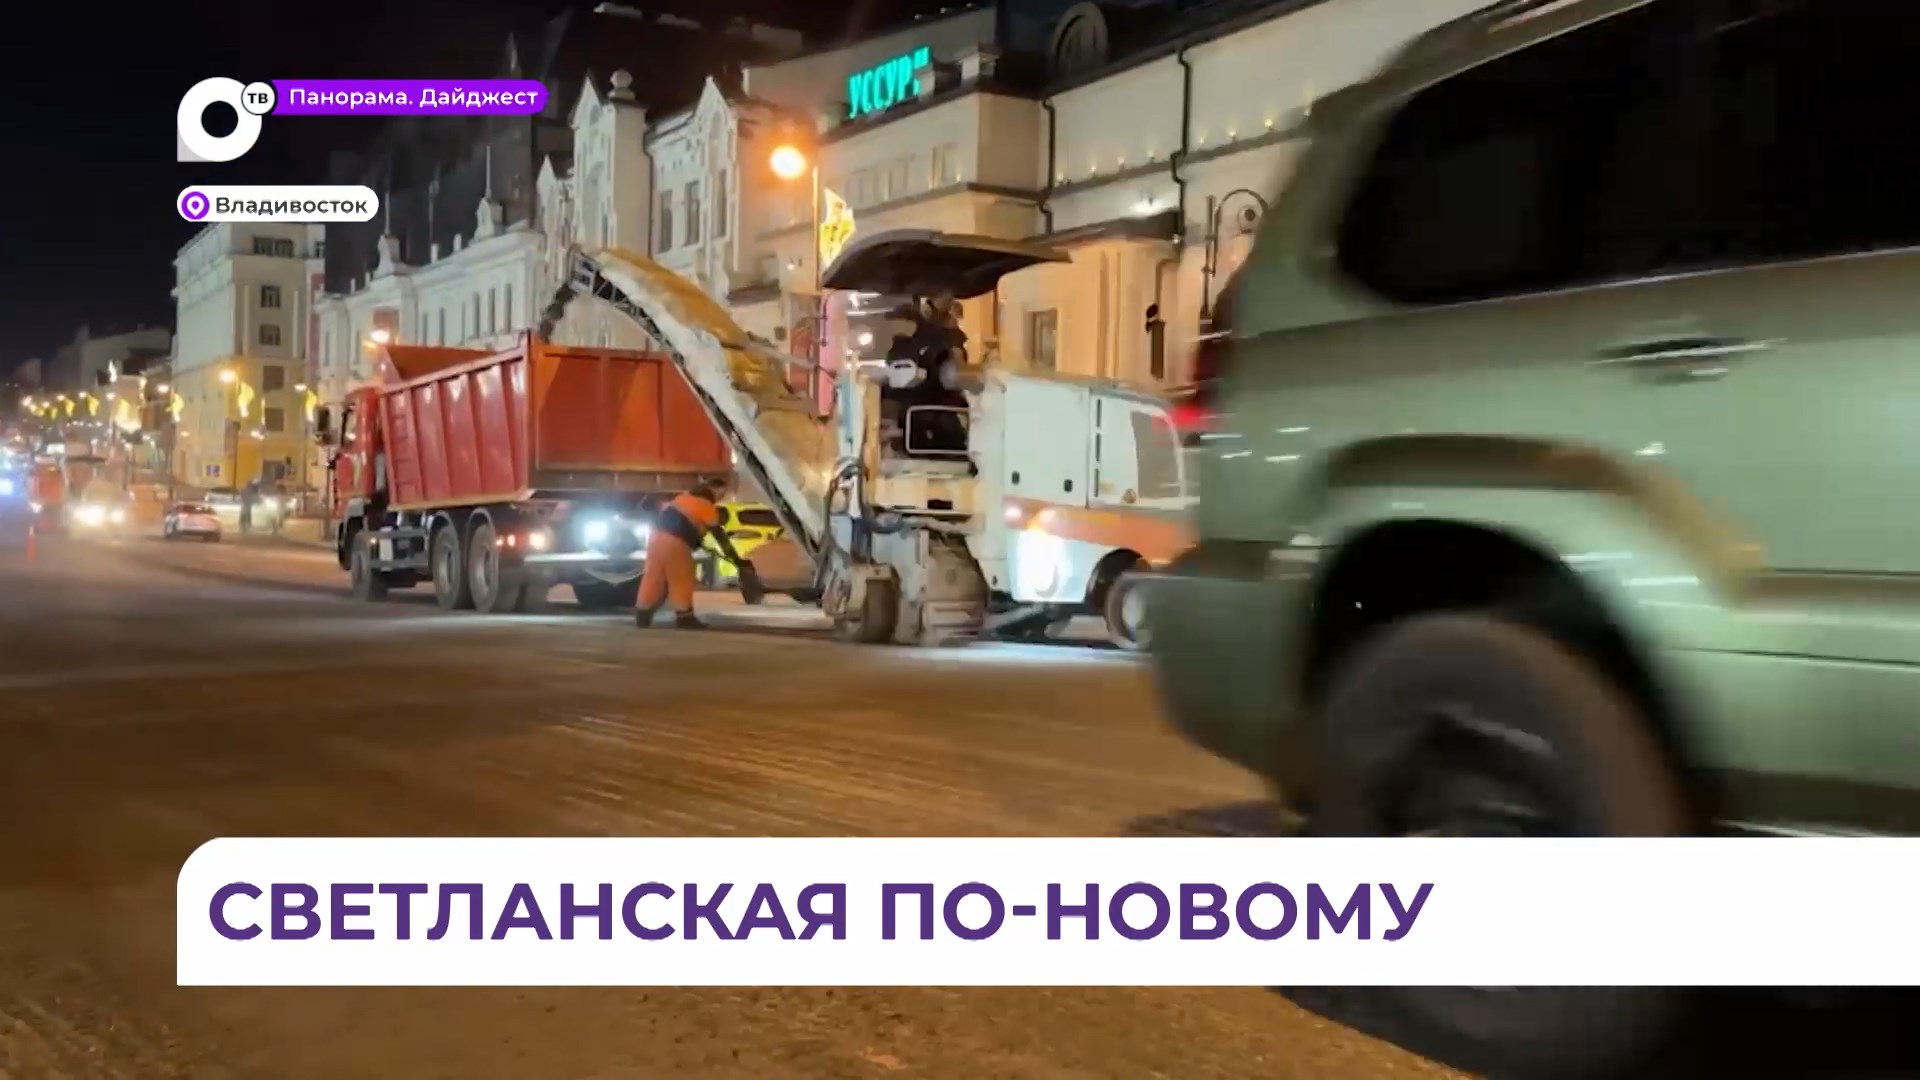 Владивостокцев просят с пониманием отнестись к неудобствам из-за ремонта дороги на Светланской